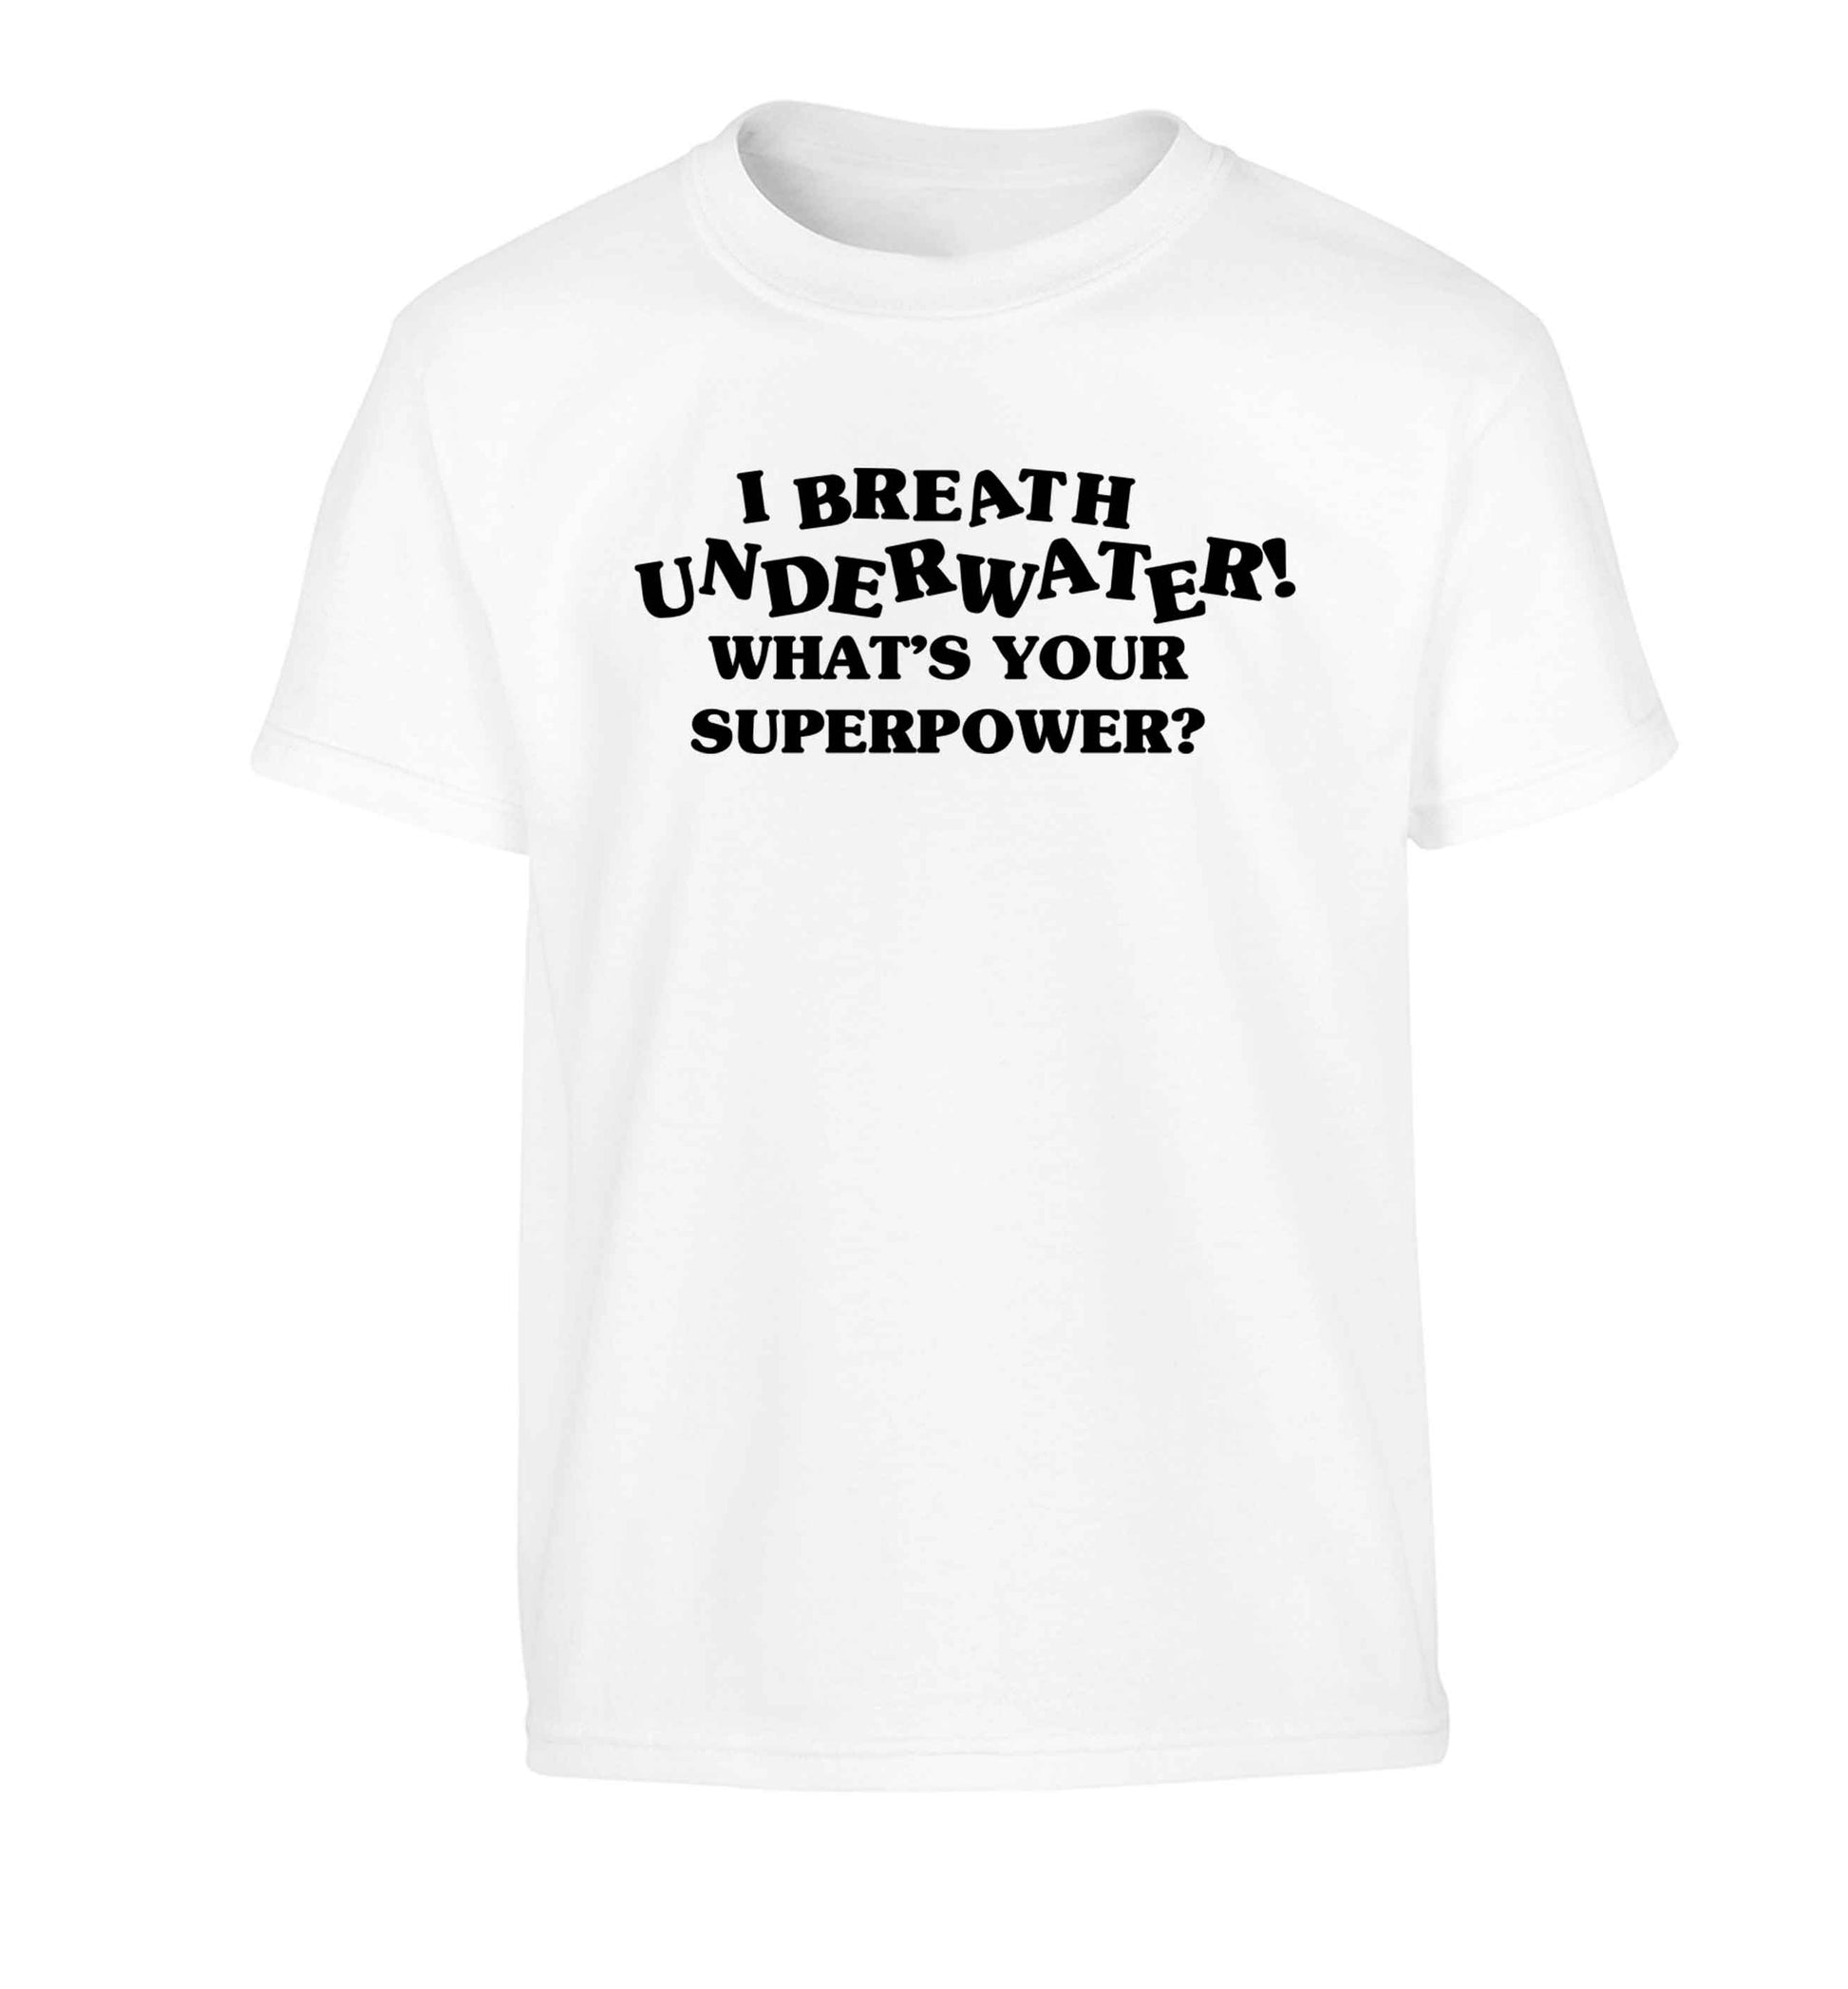 I breath underwater what's your superpower? Children's white Tshirt 12-13 Years